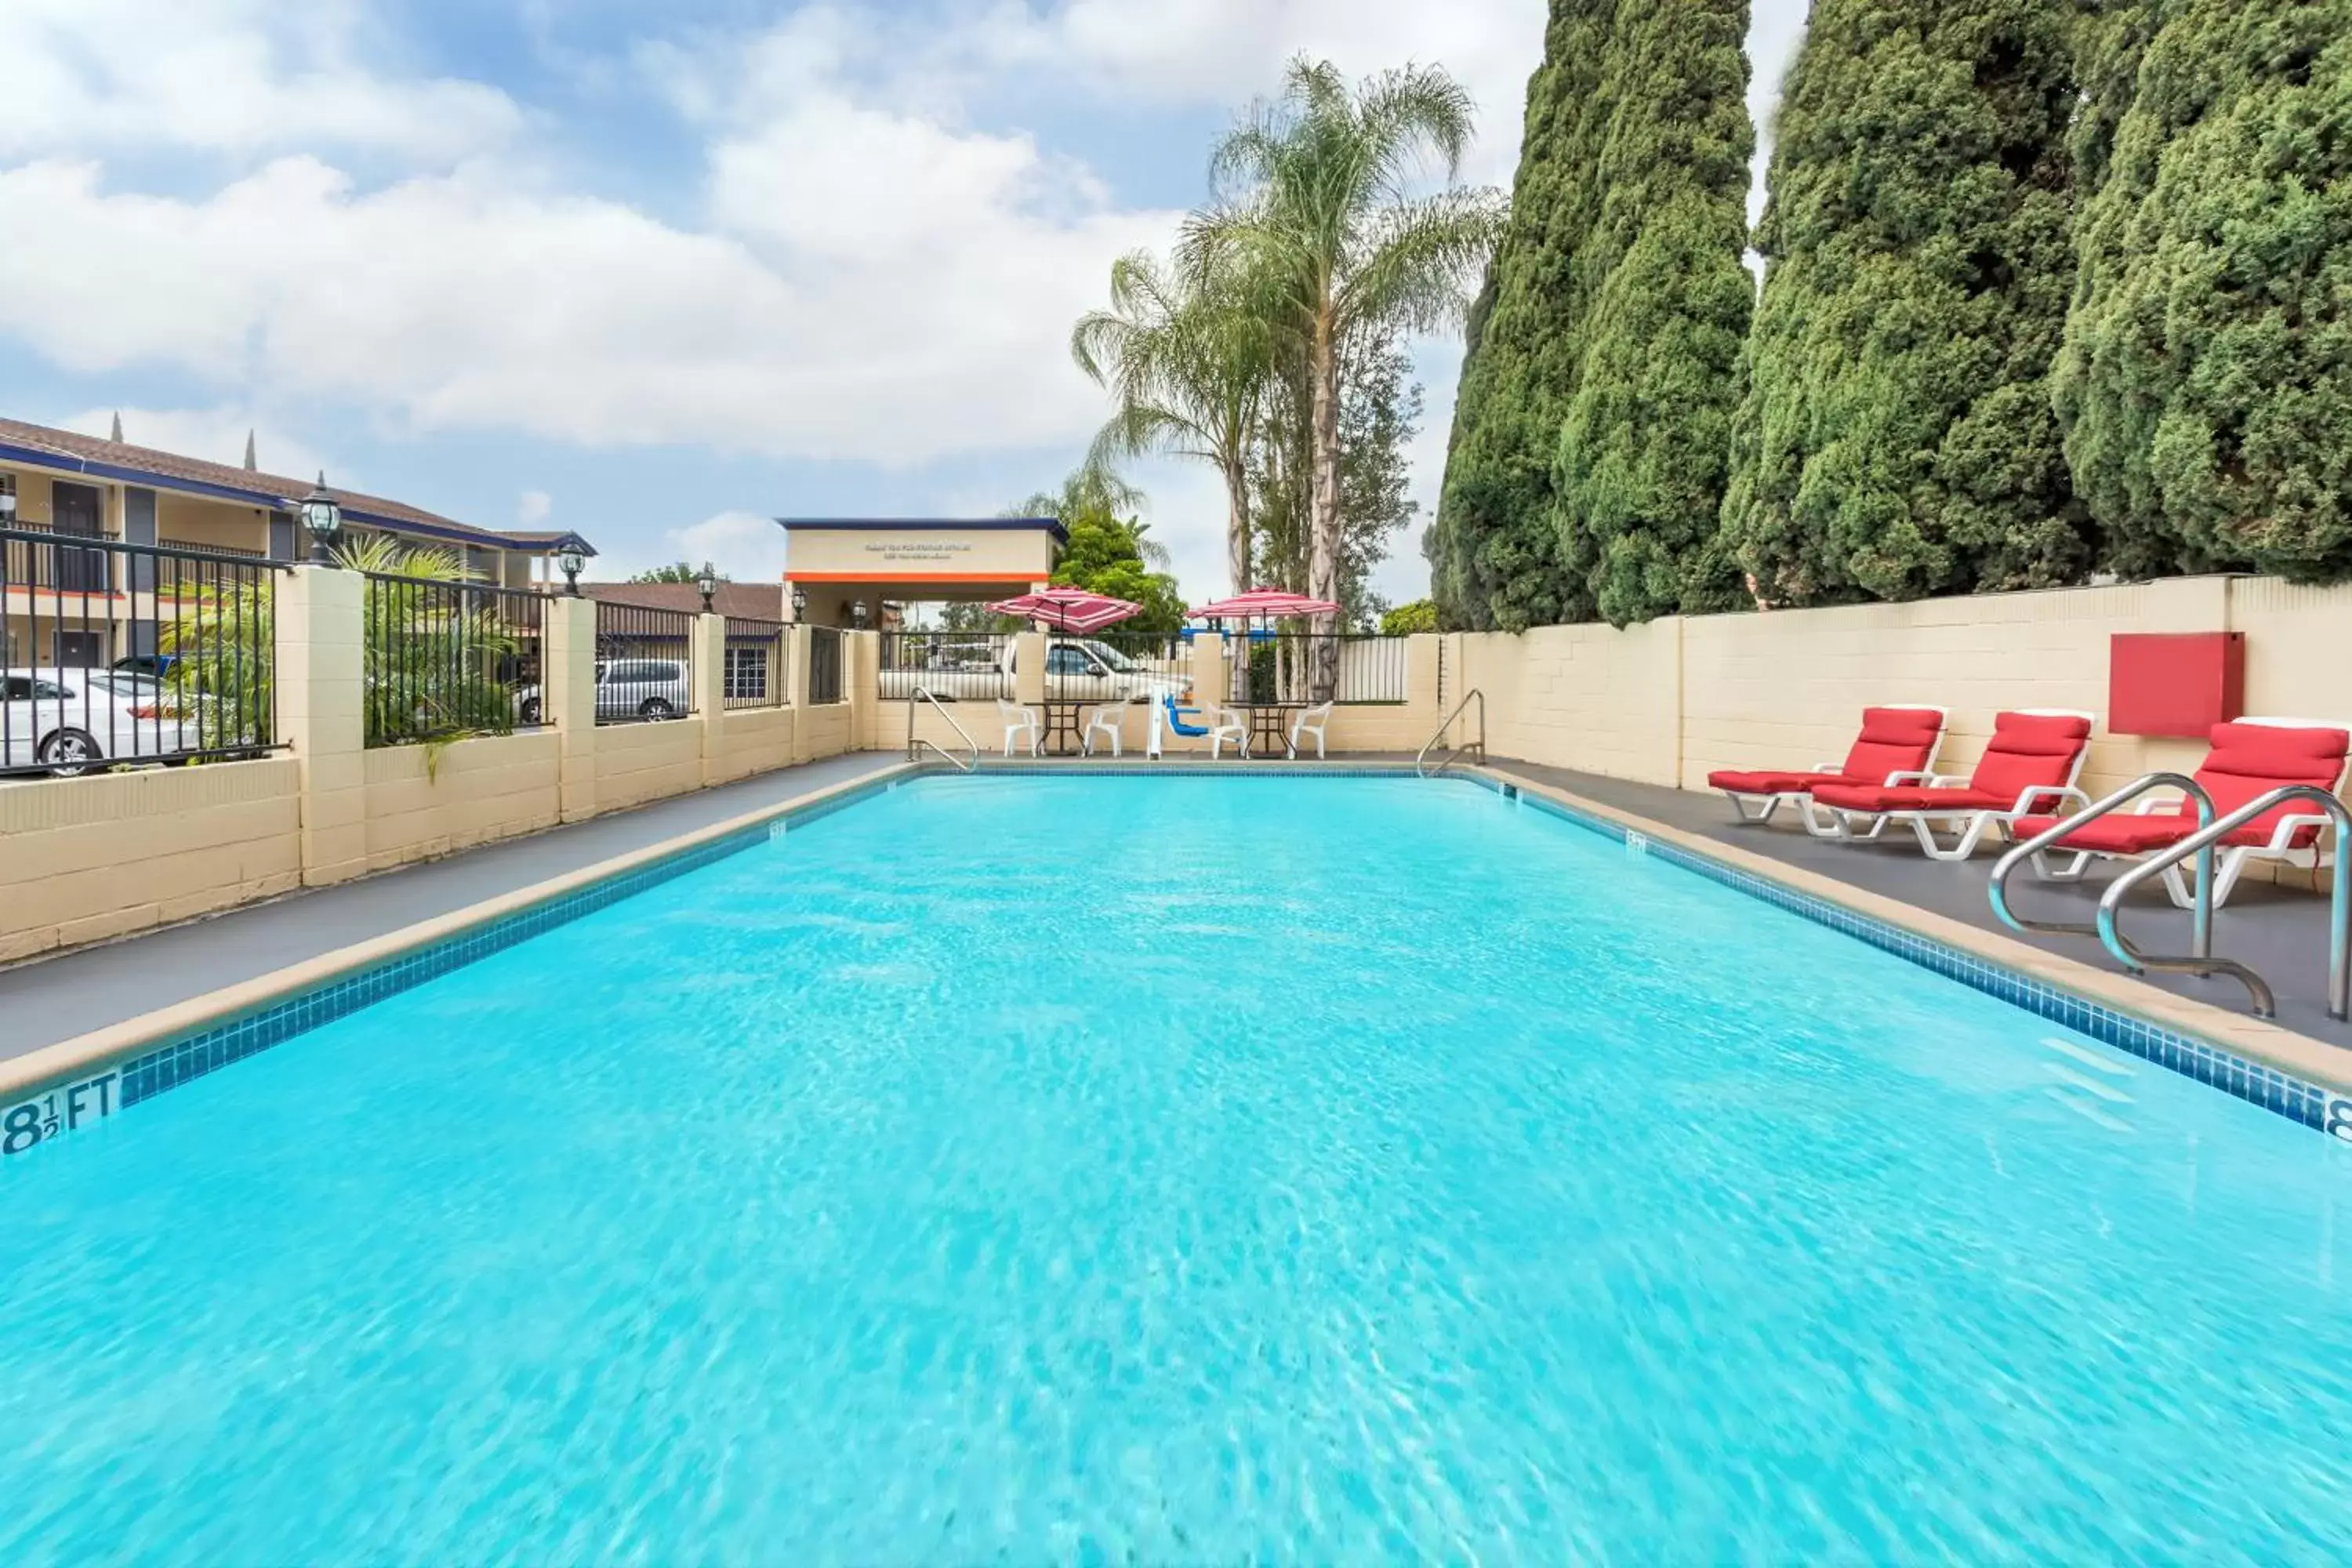 Swimming Pool in Casa Blanca Hotel & Suites Orange